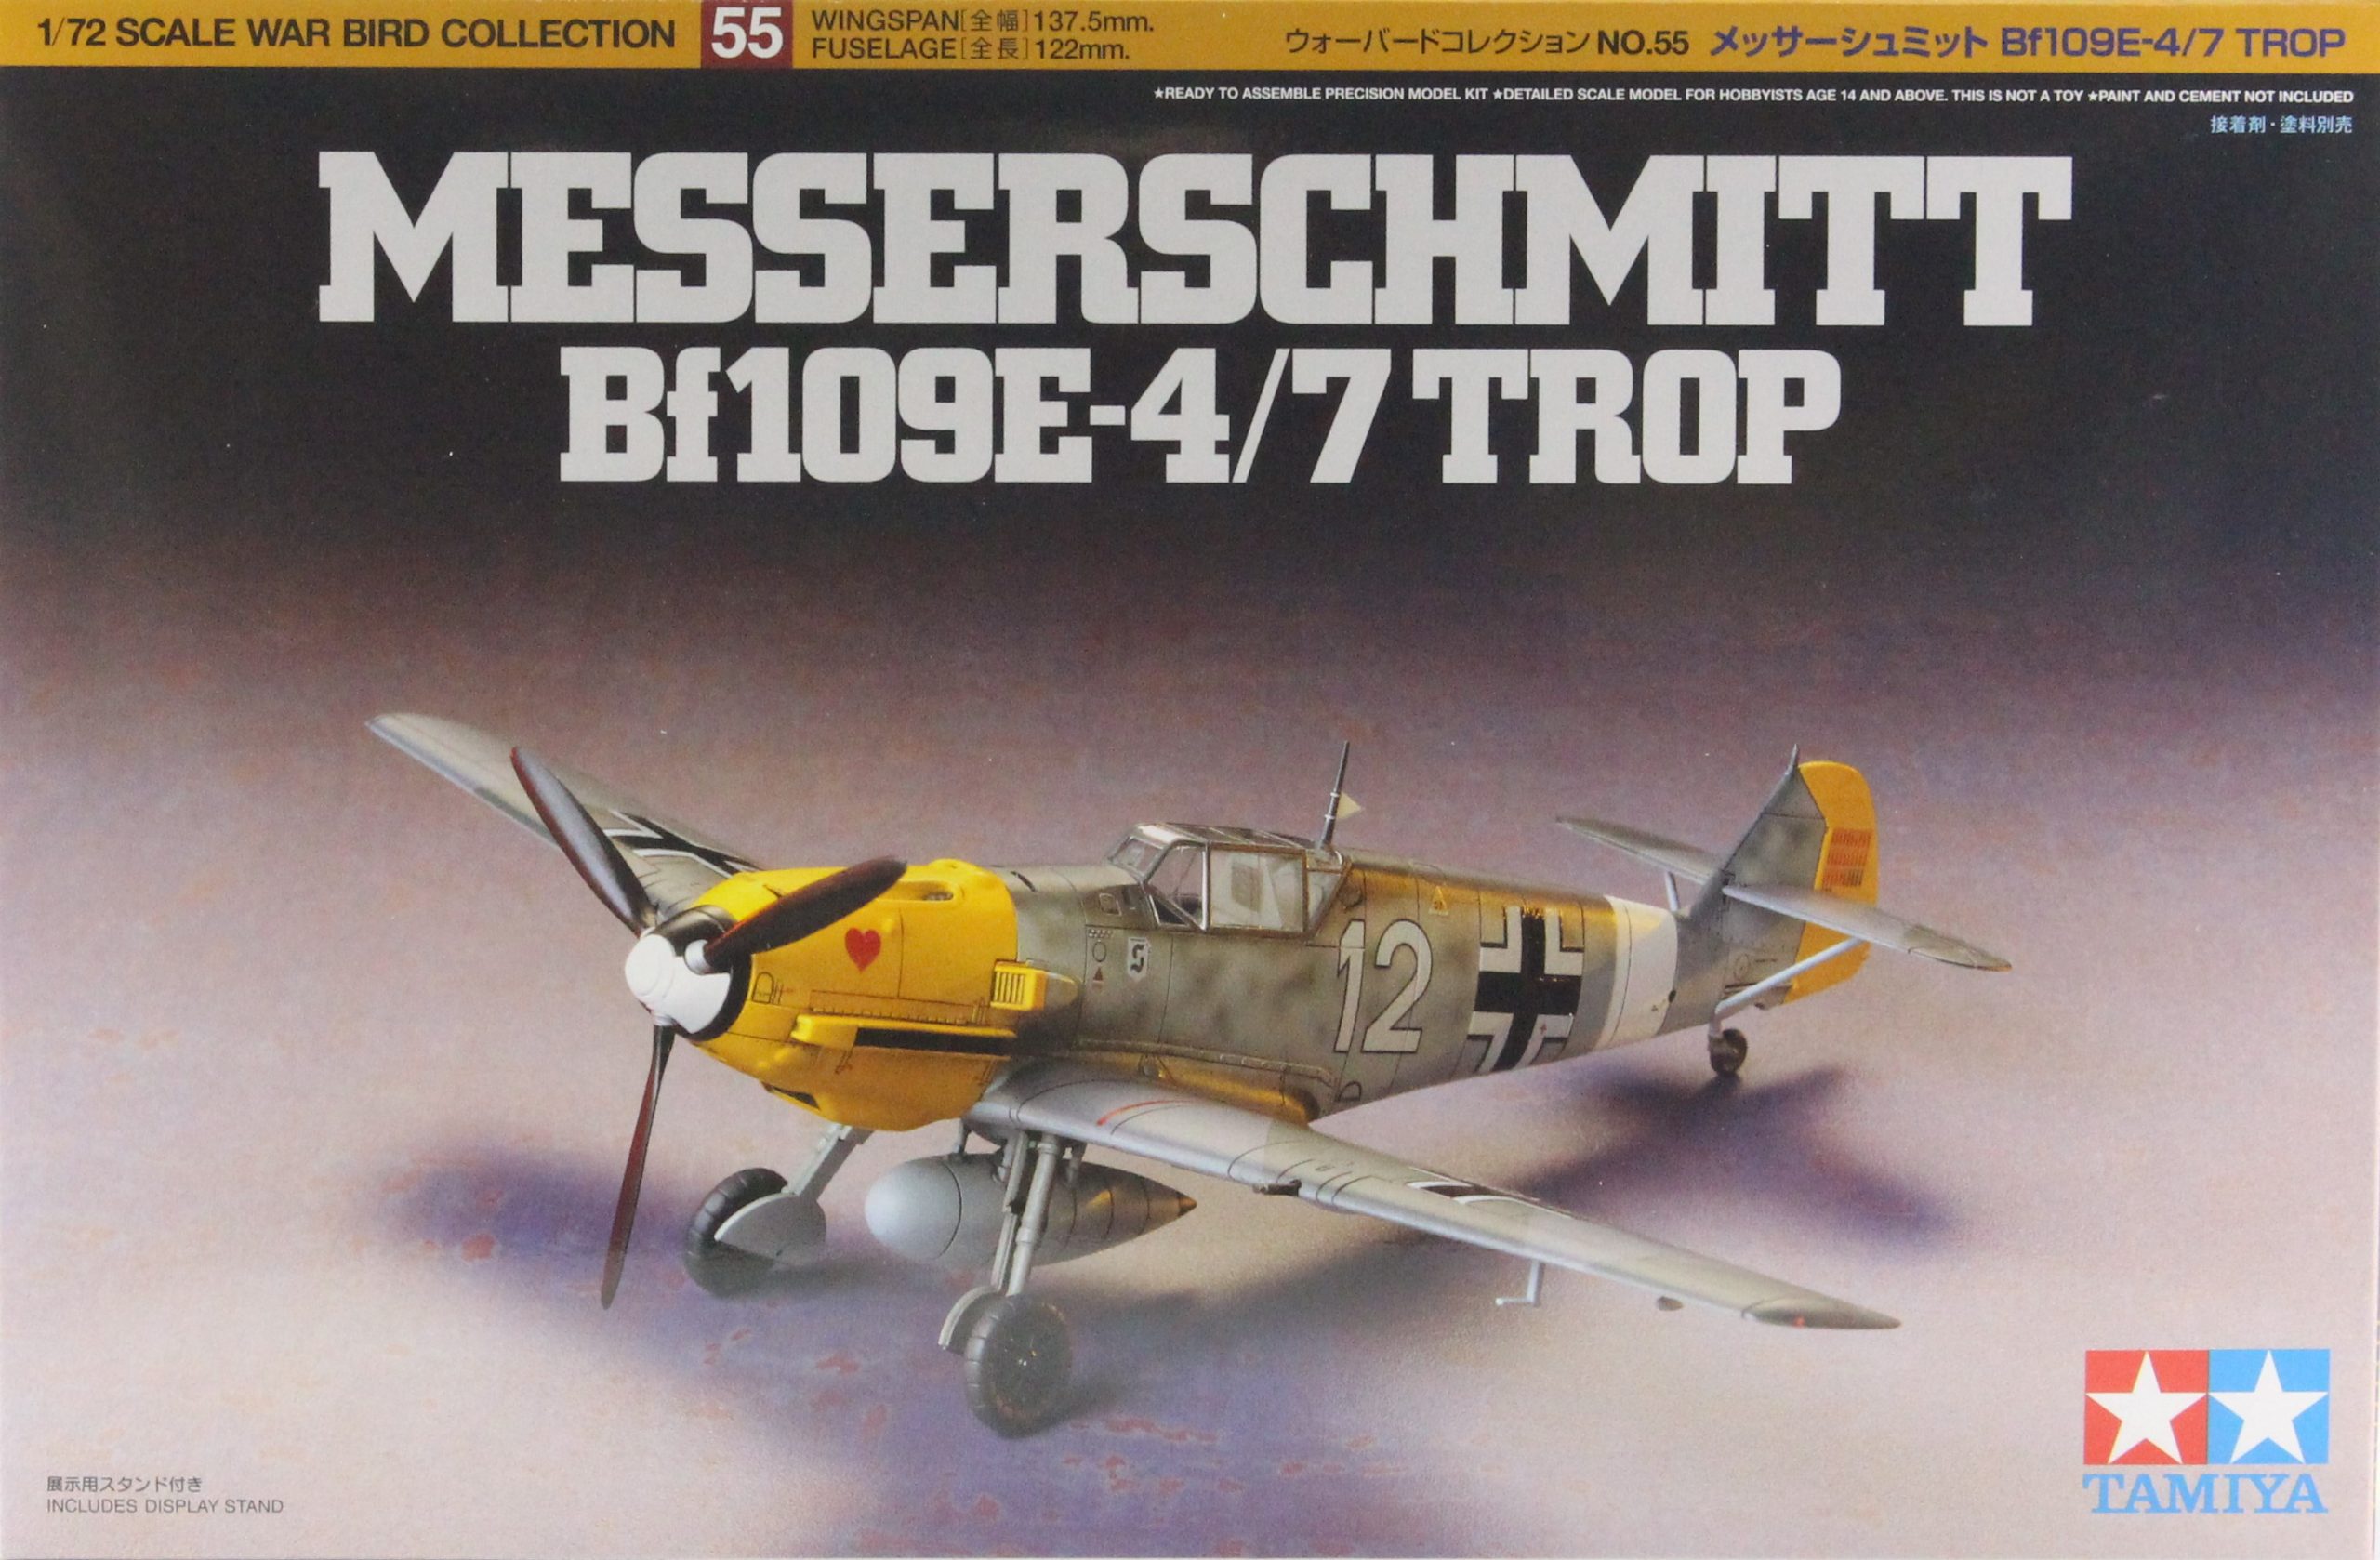 1/72 War Bird Collection no.55 Messerschmitt Bf109E-4/7 Trop Item No: 60755